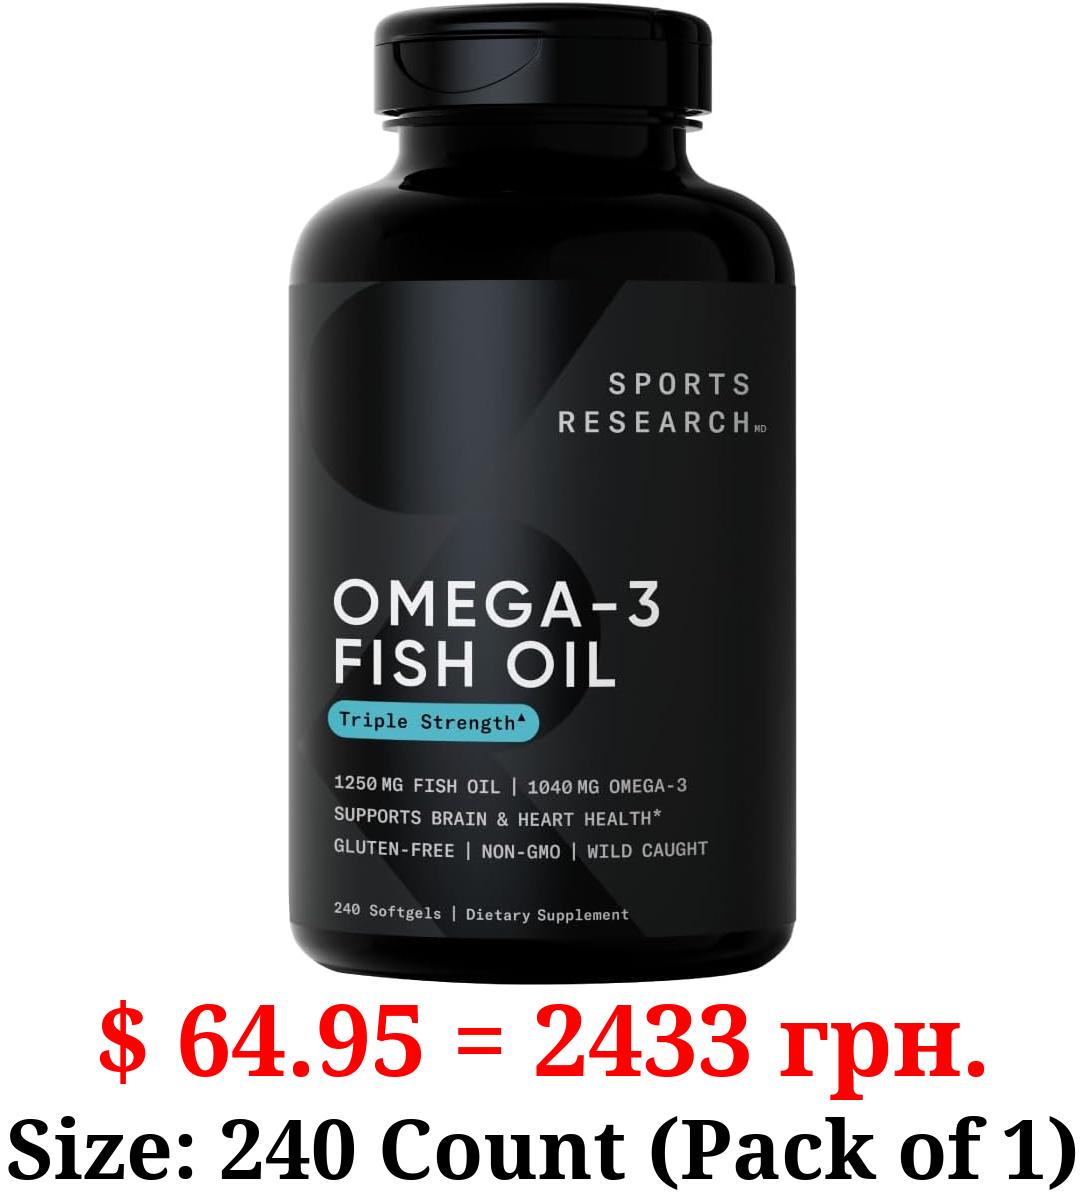 Sports Research Triple Strength Omega 3 Fish Oil 1250mg - Burpless Fish Oil Supplement w/EPA & DHA Fatty Acids from Wild Alaskan Pollock (240 Softgels)